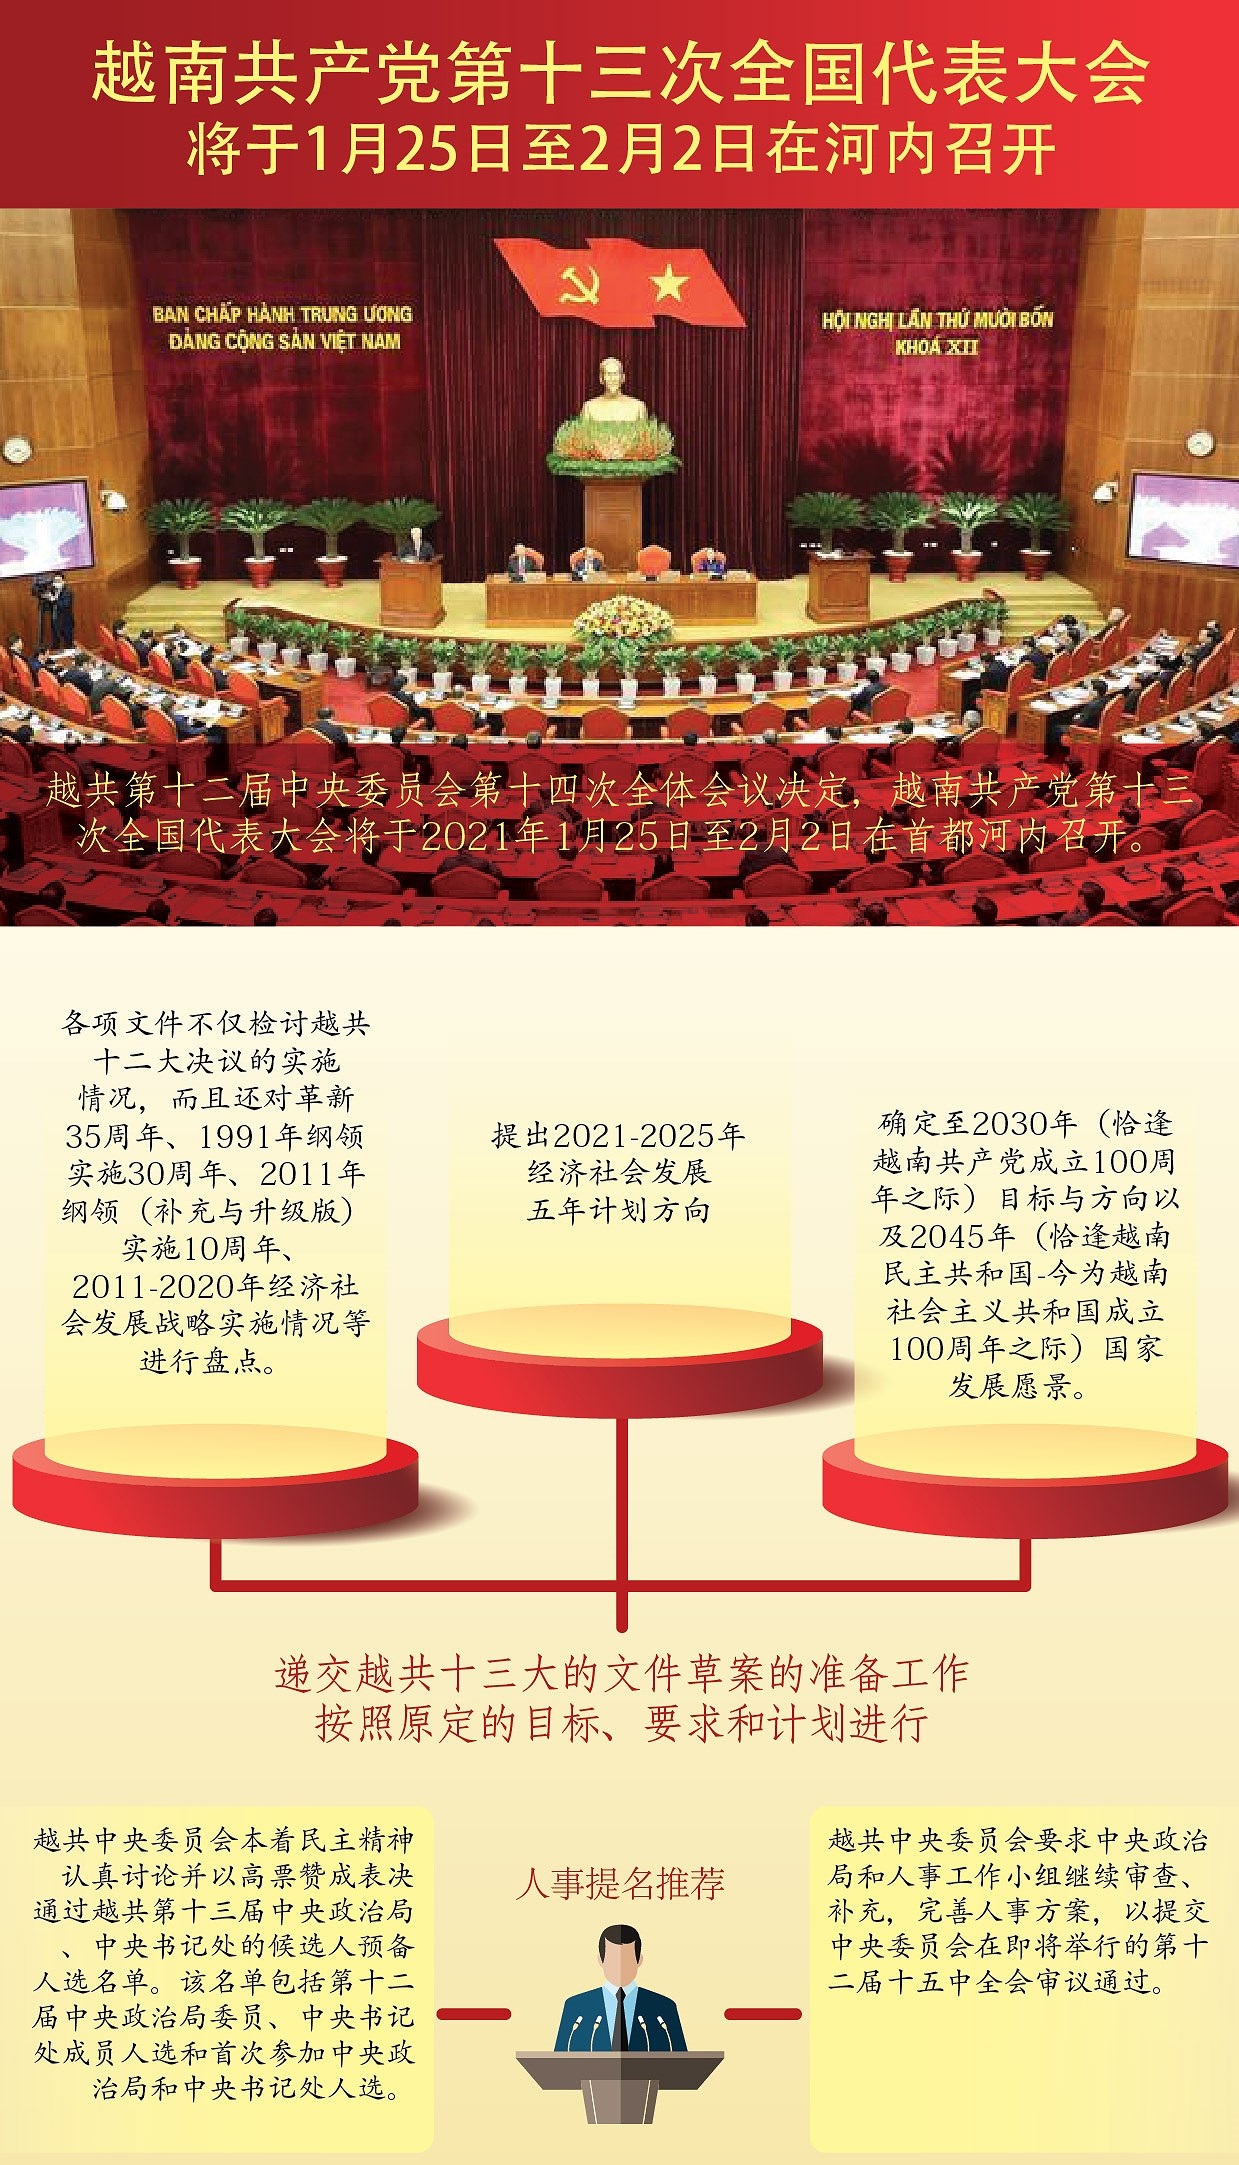 越南共产党第十三次全国代表大会将于1月25日至2月2日在河内召开